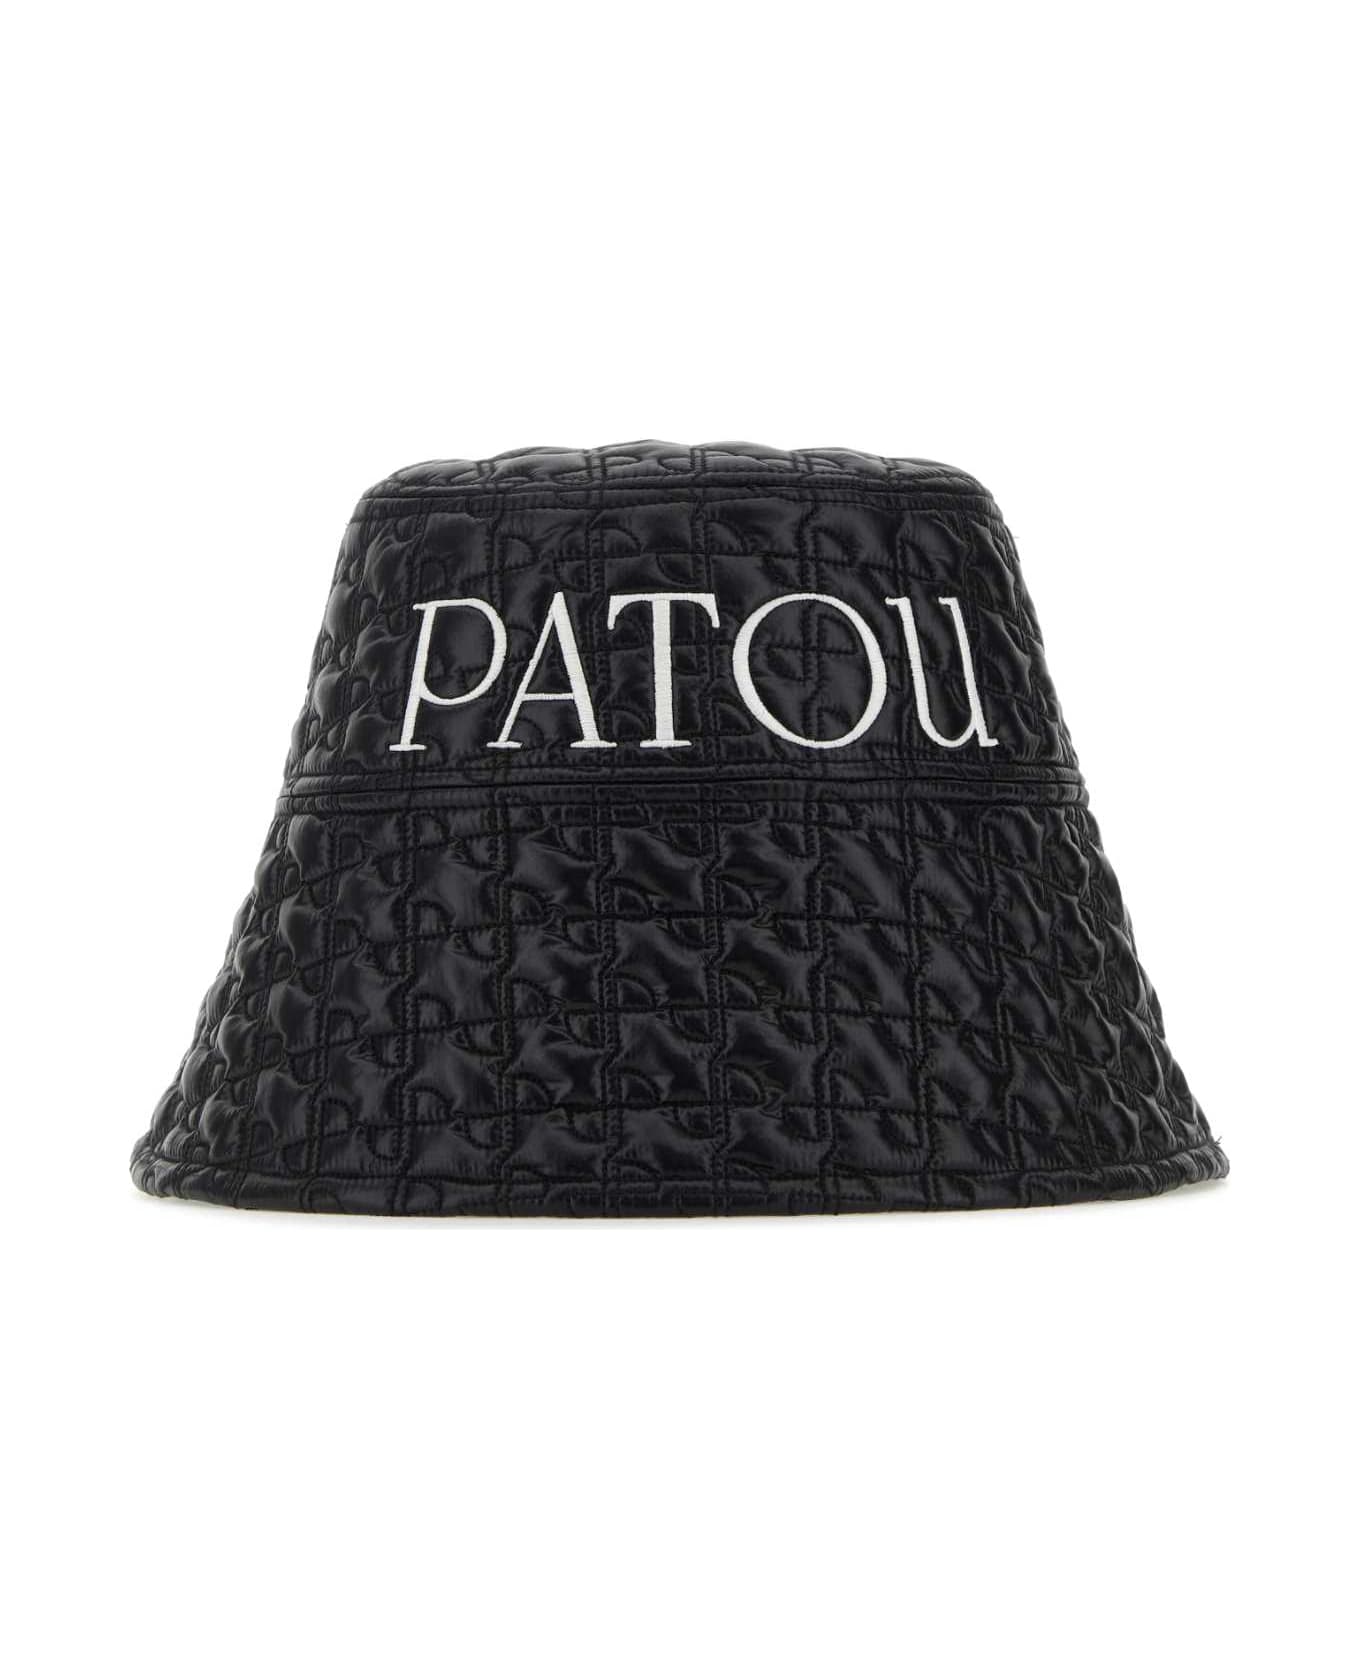 Patou Black Nylon Bucket Hat - BLACK